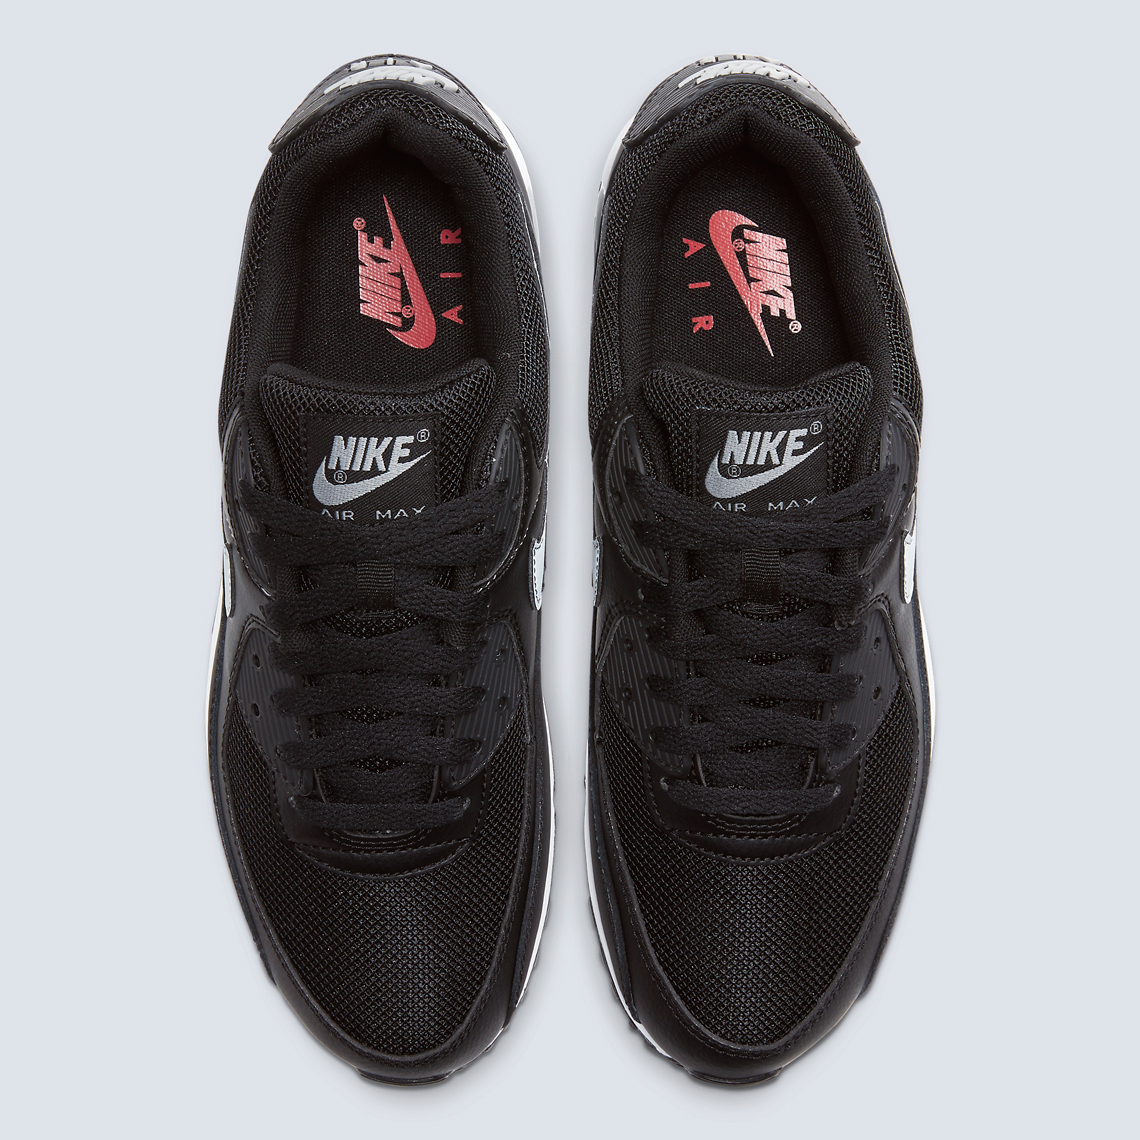 Nike Air Max 90 Cw7481 002 1